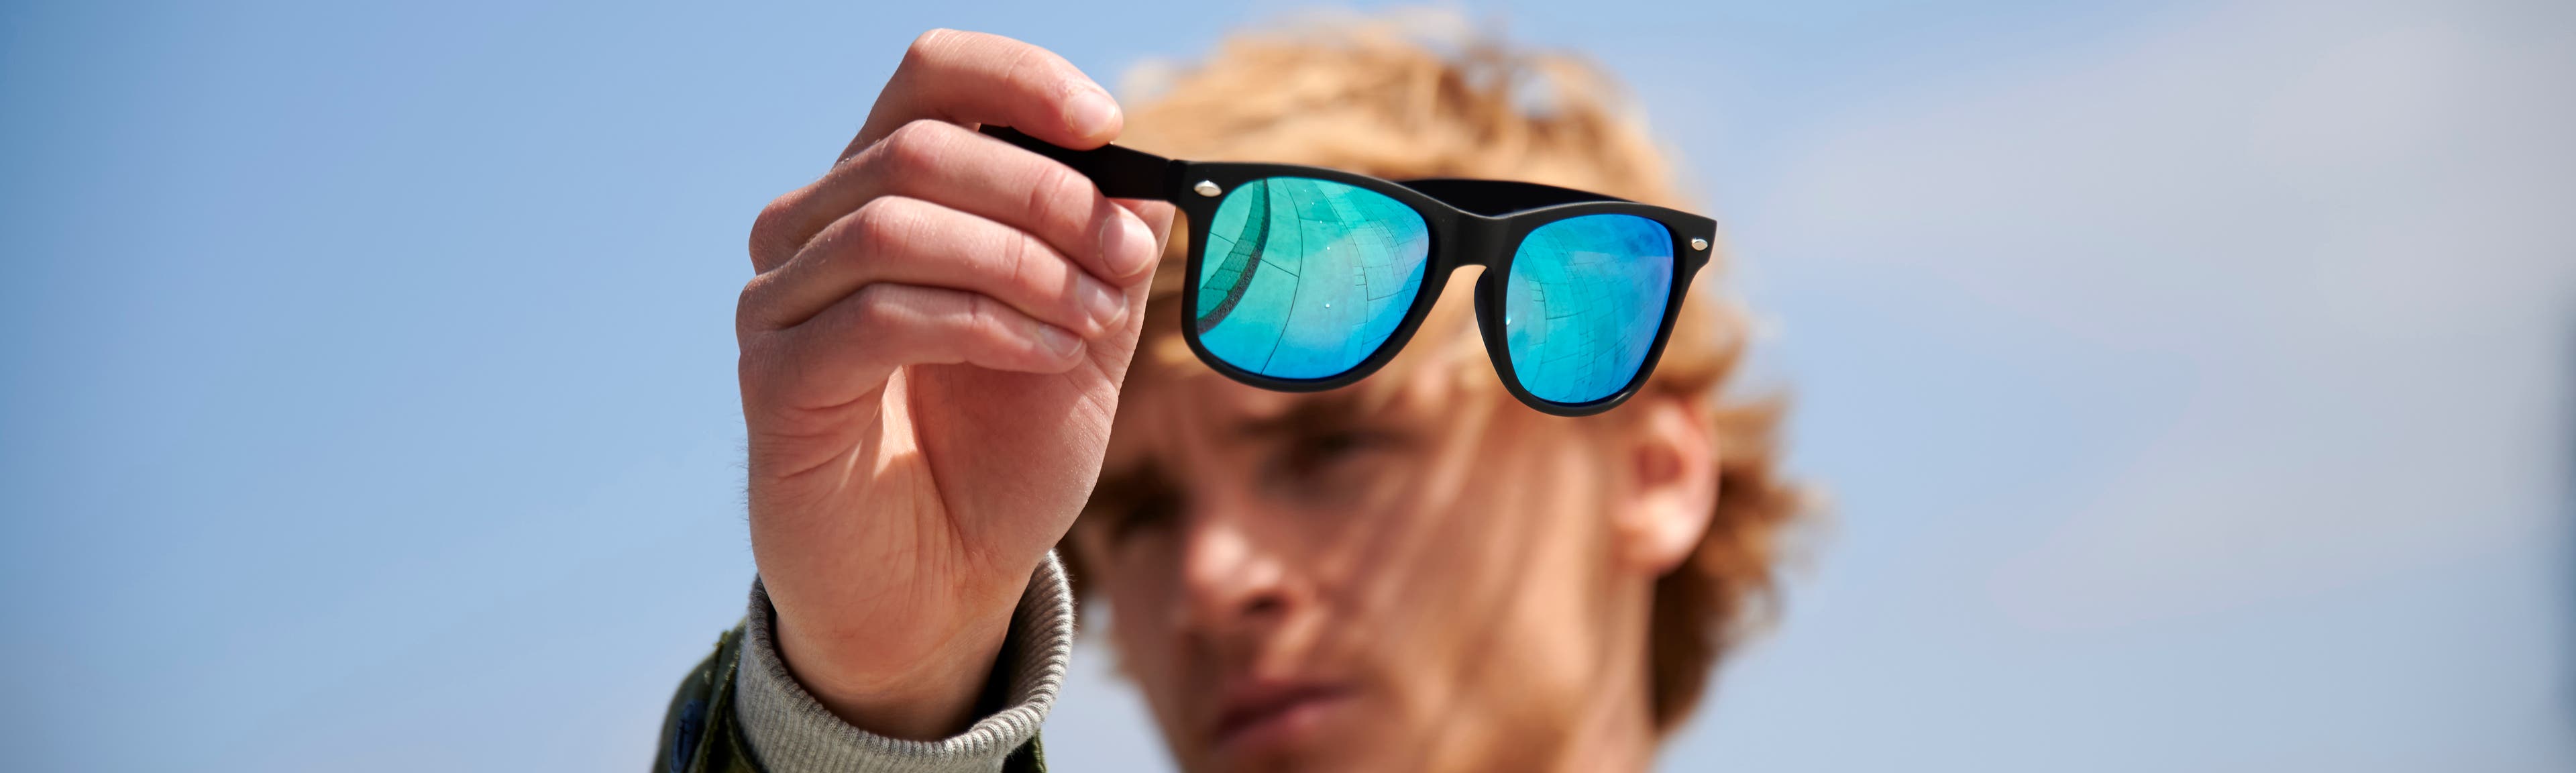 Ochelari de soare - Protejează-ți ochii de soare